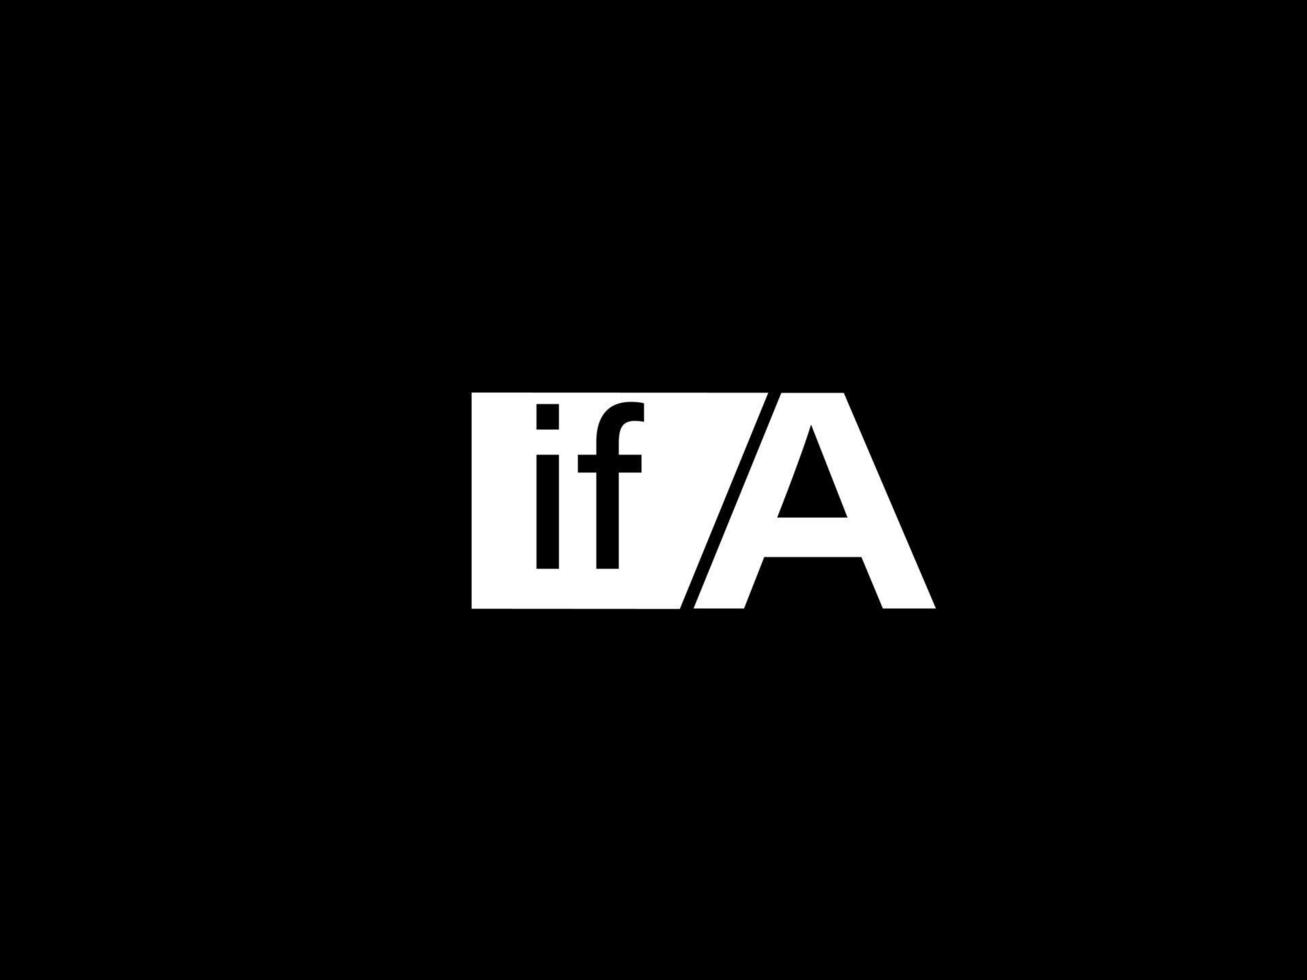 ifa logotipo e arte vetorial de design gráfico, ícones isolados em fundo preto vetor